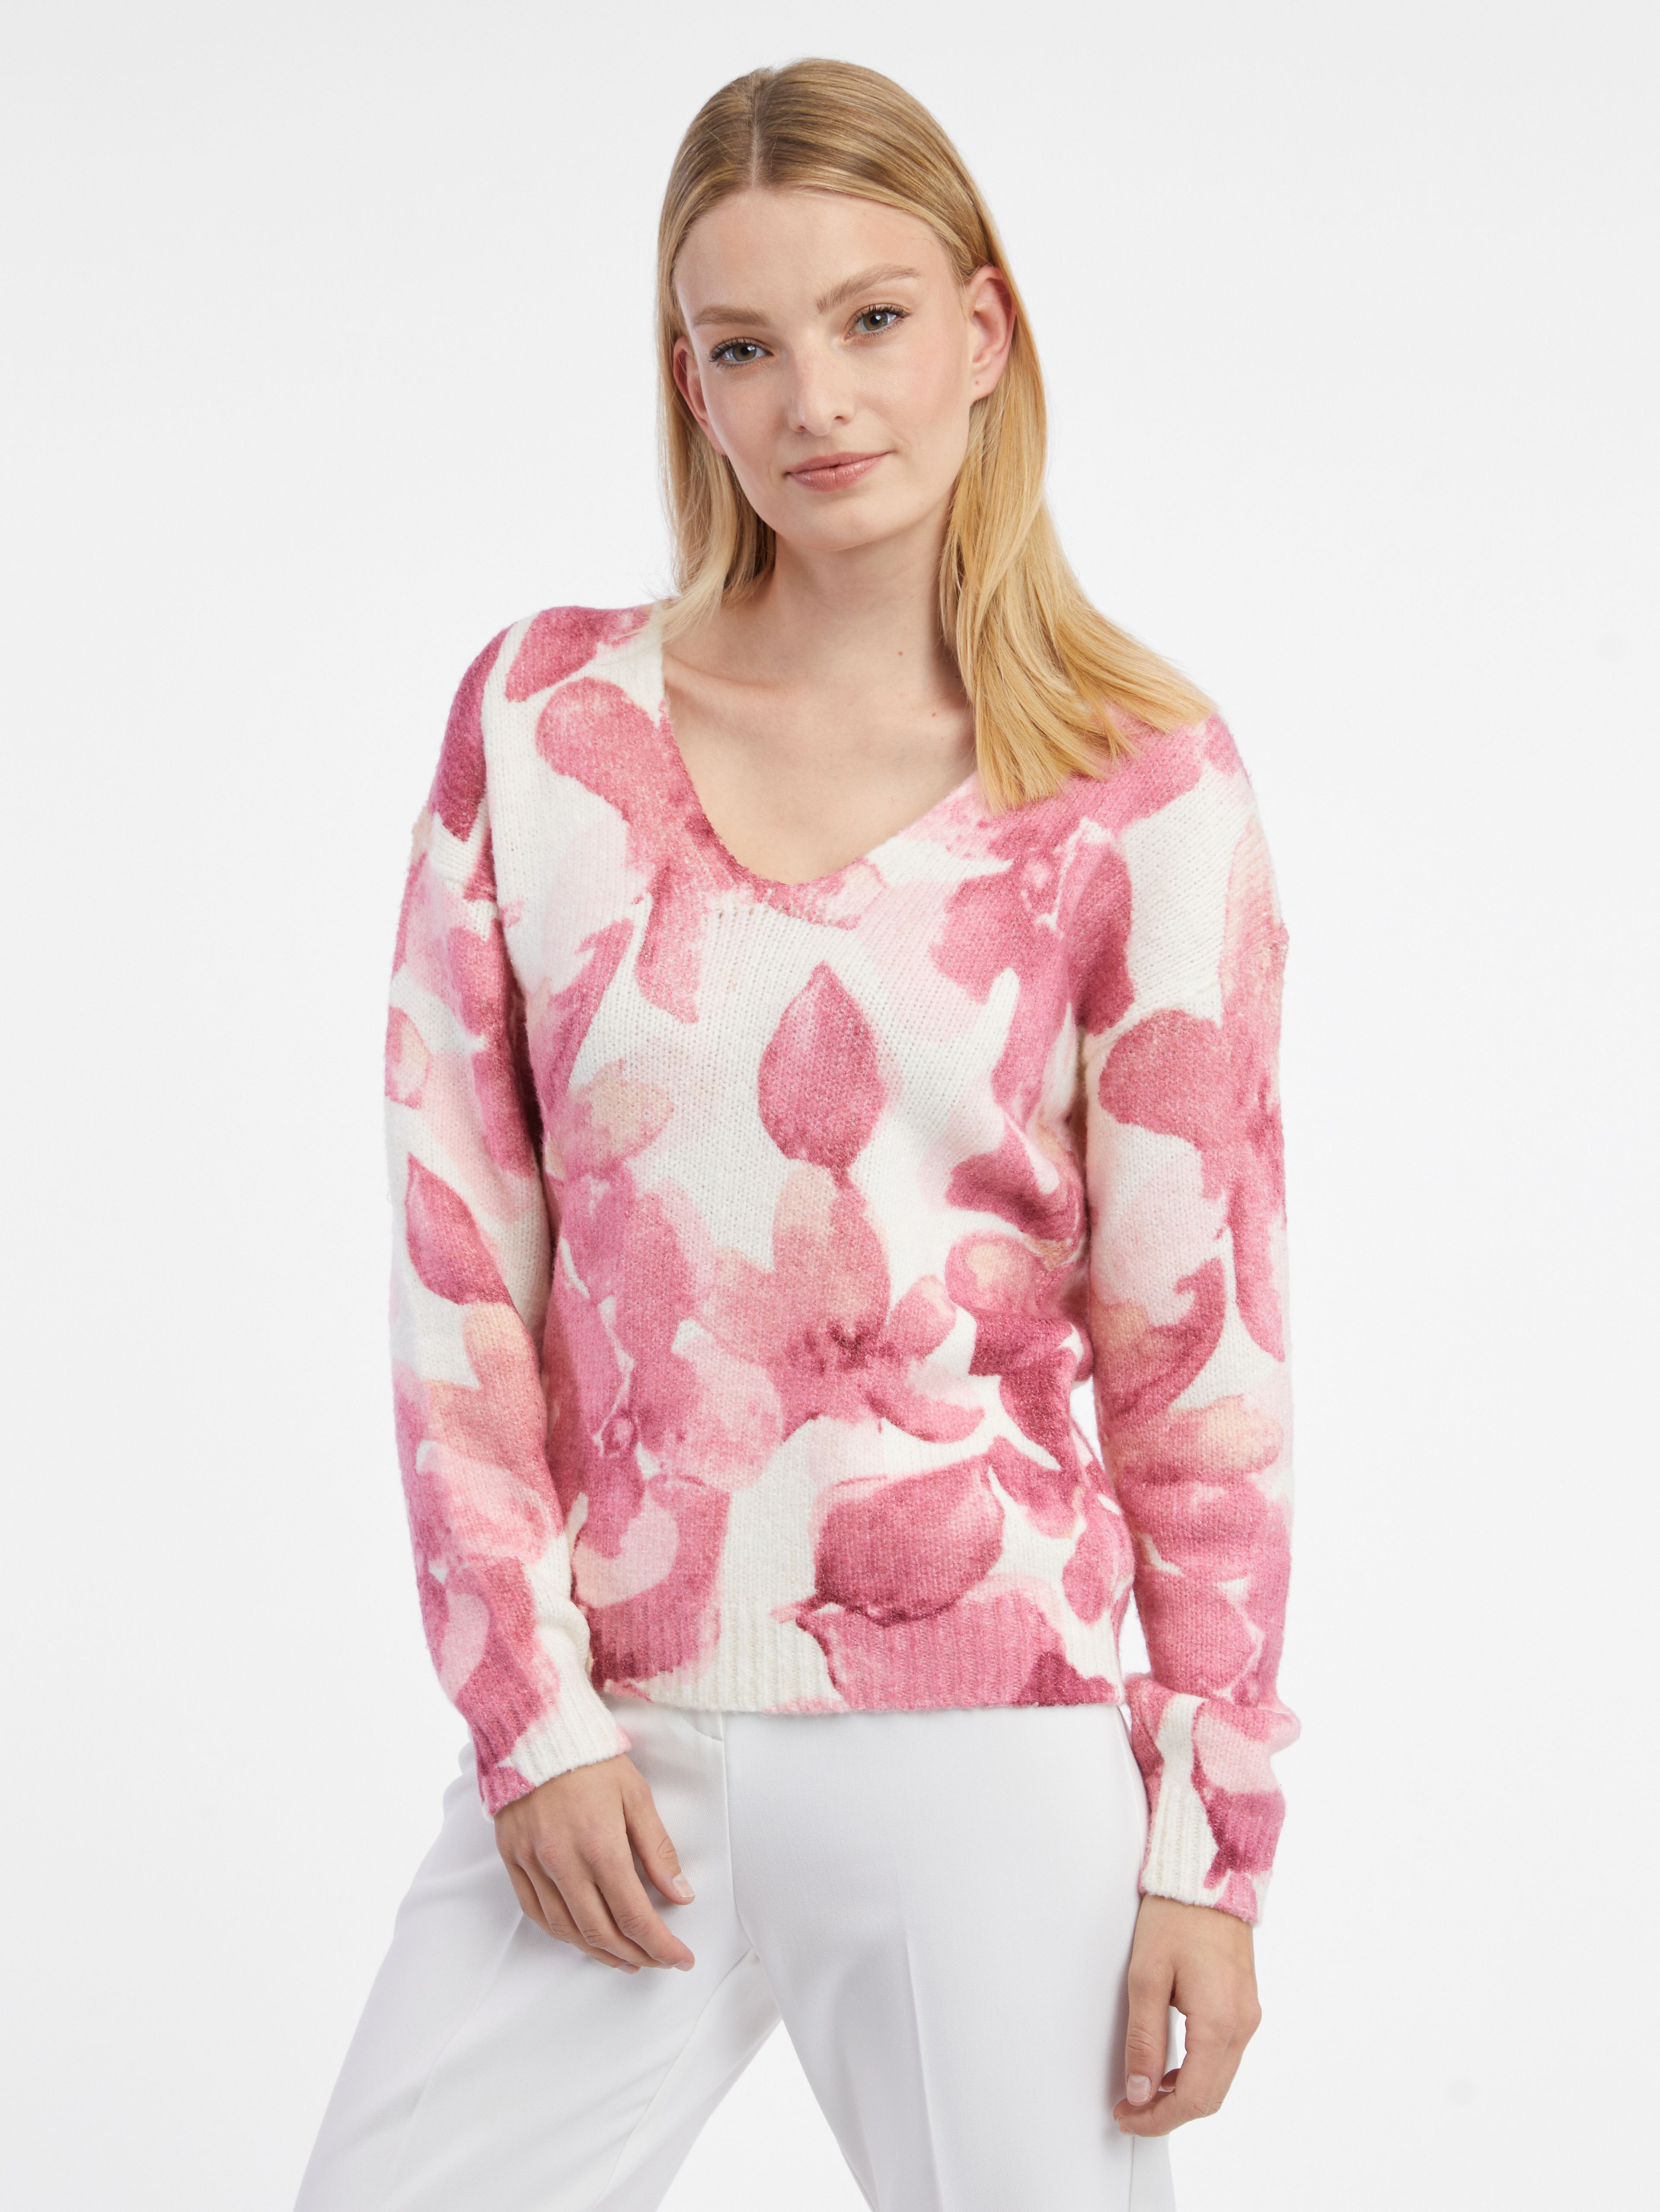 Růžovo-bílý dámský květovaný svetr ORSAY